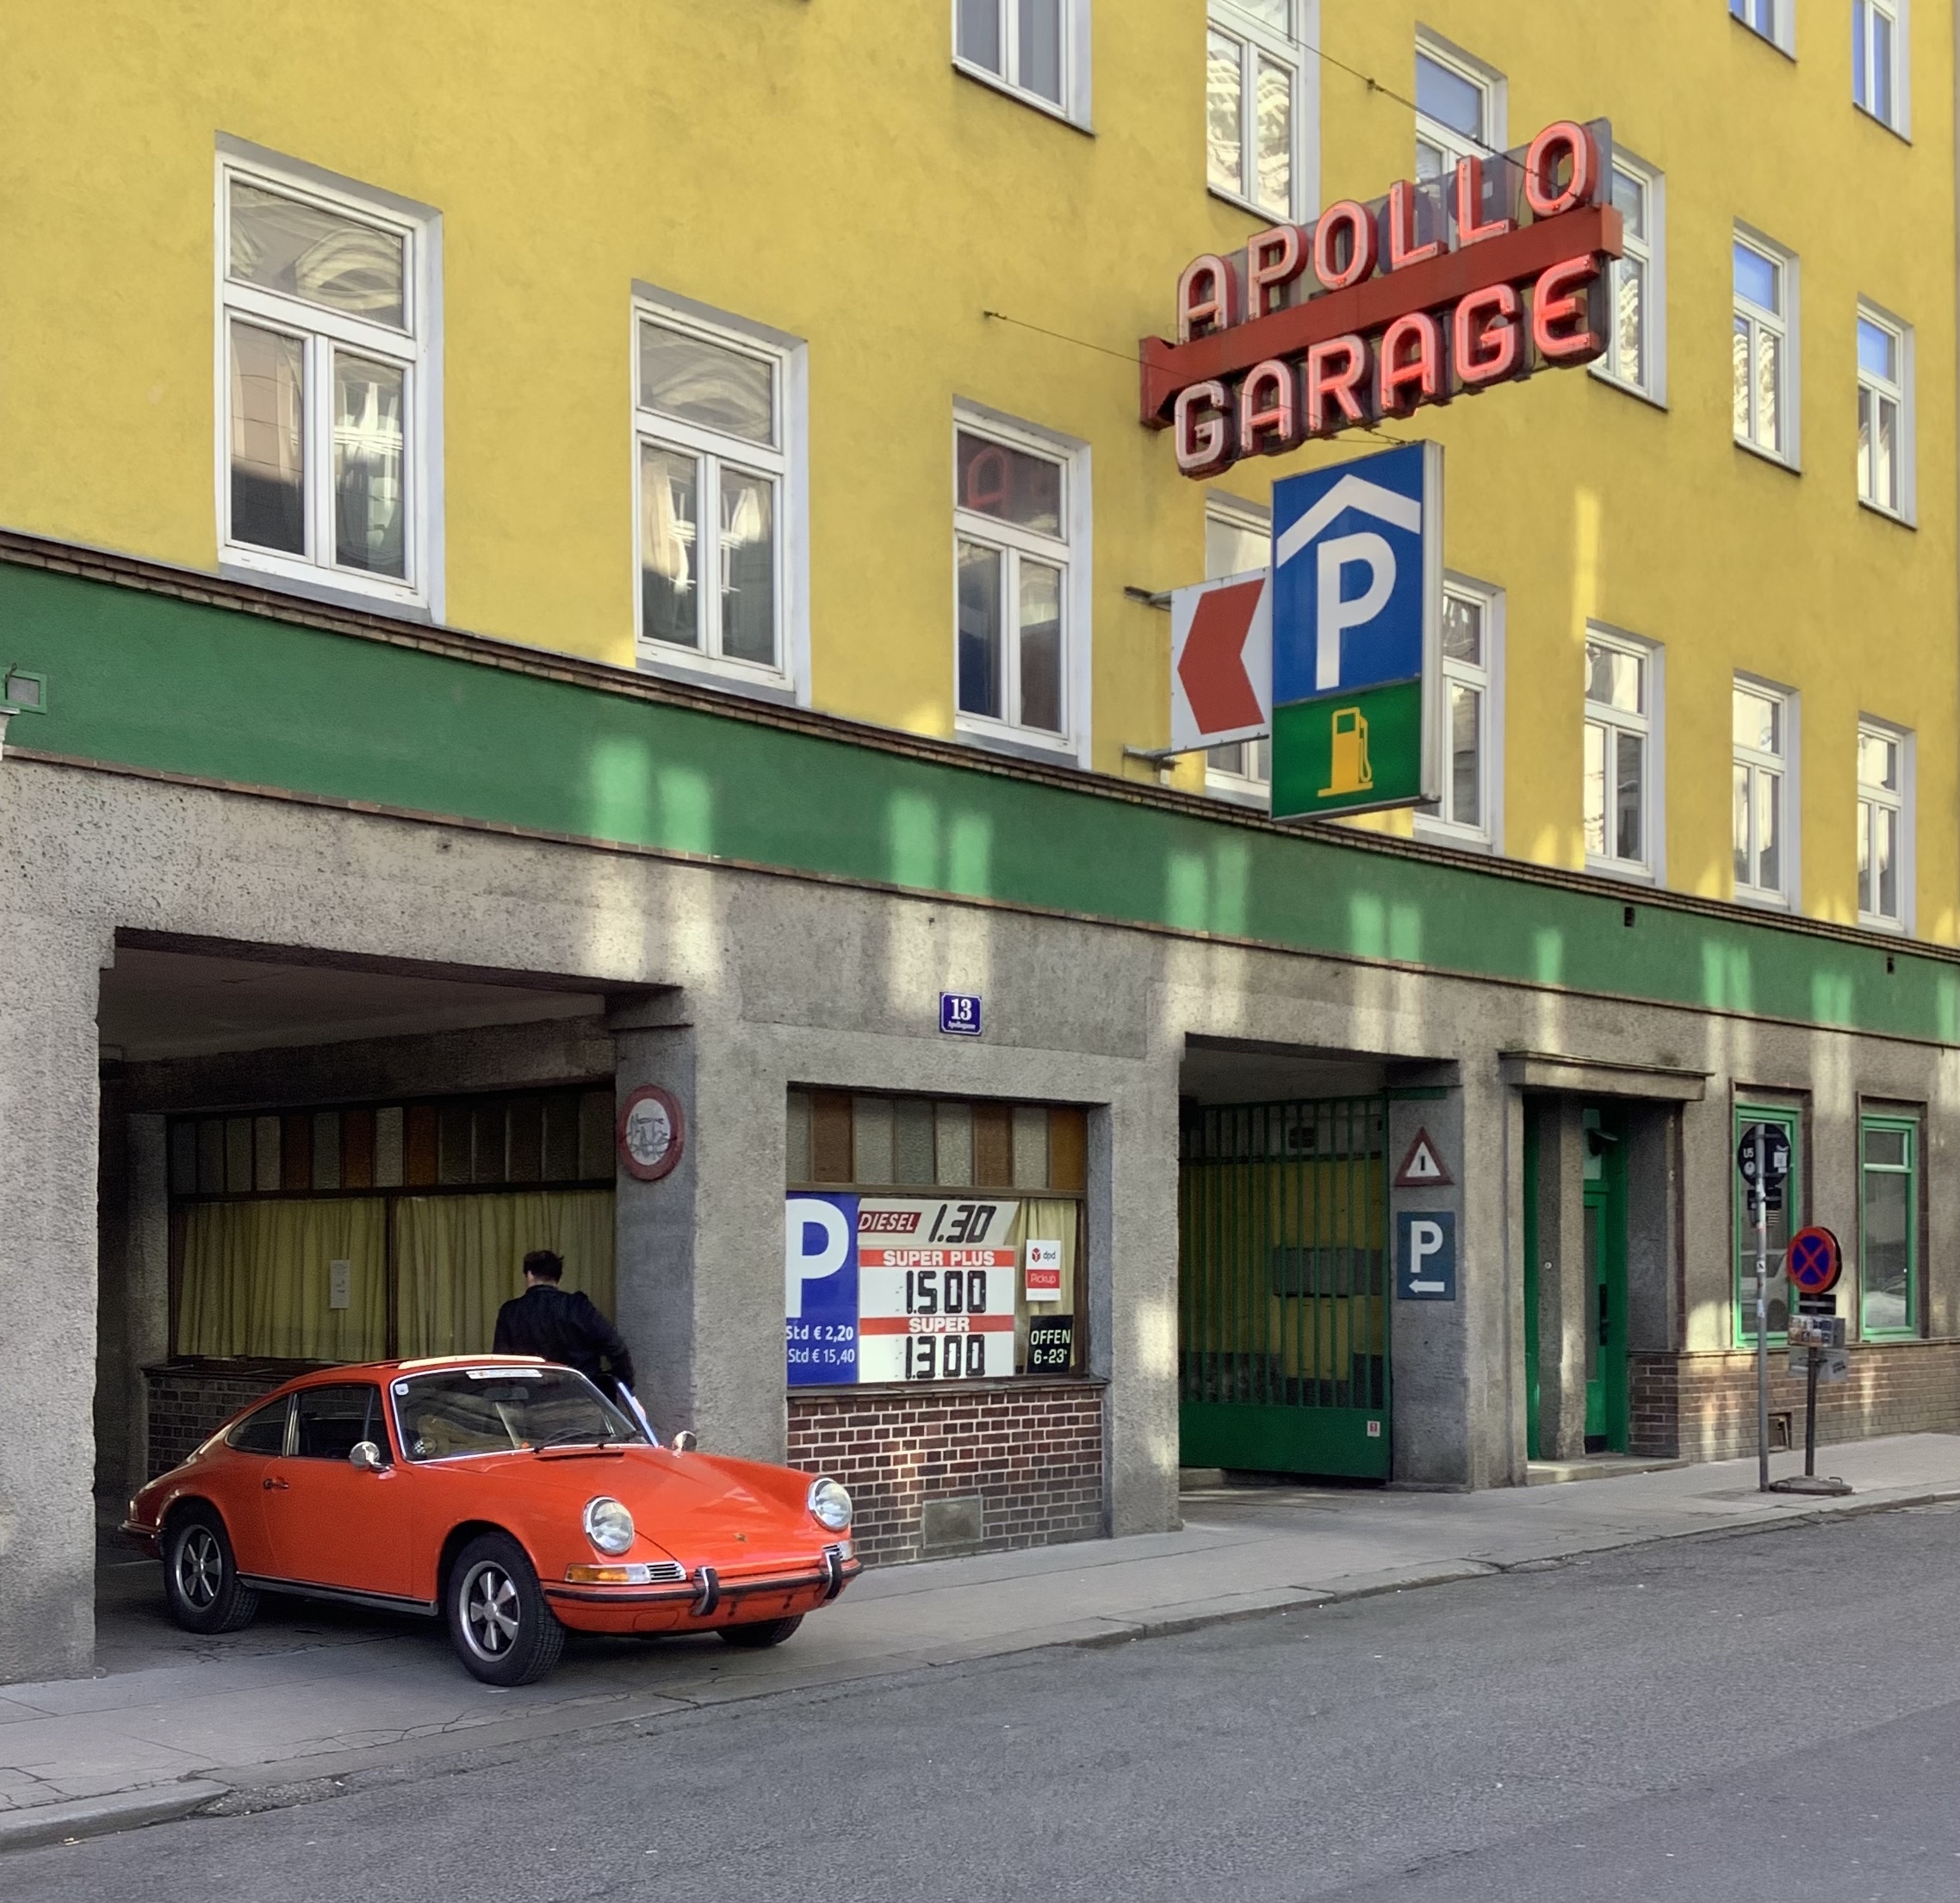 Parkgarage Wien Apollo Garage